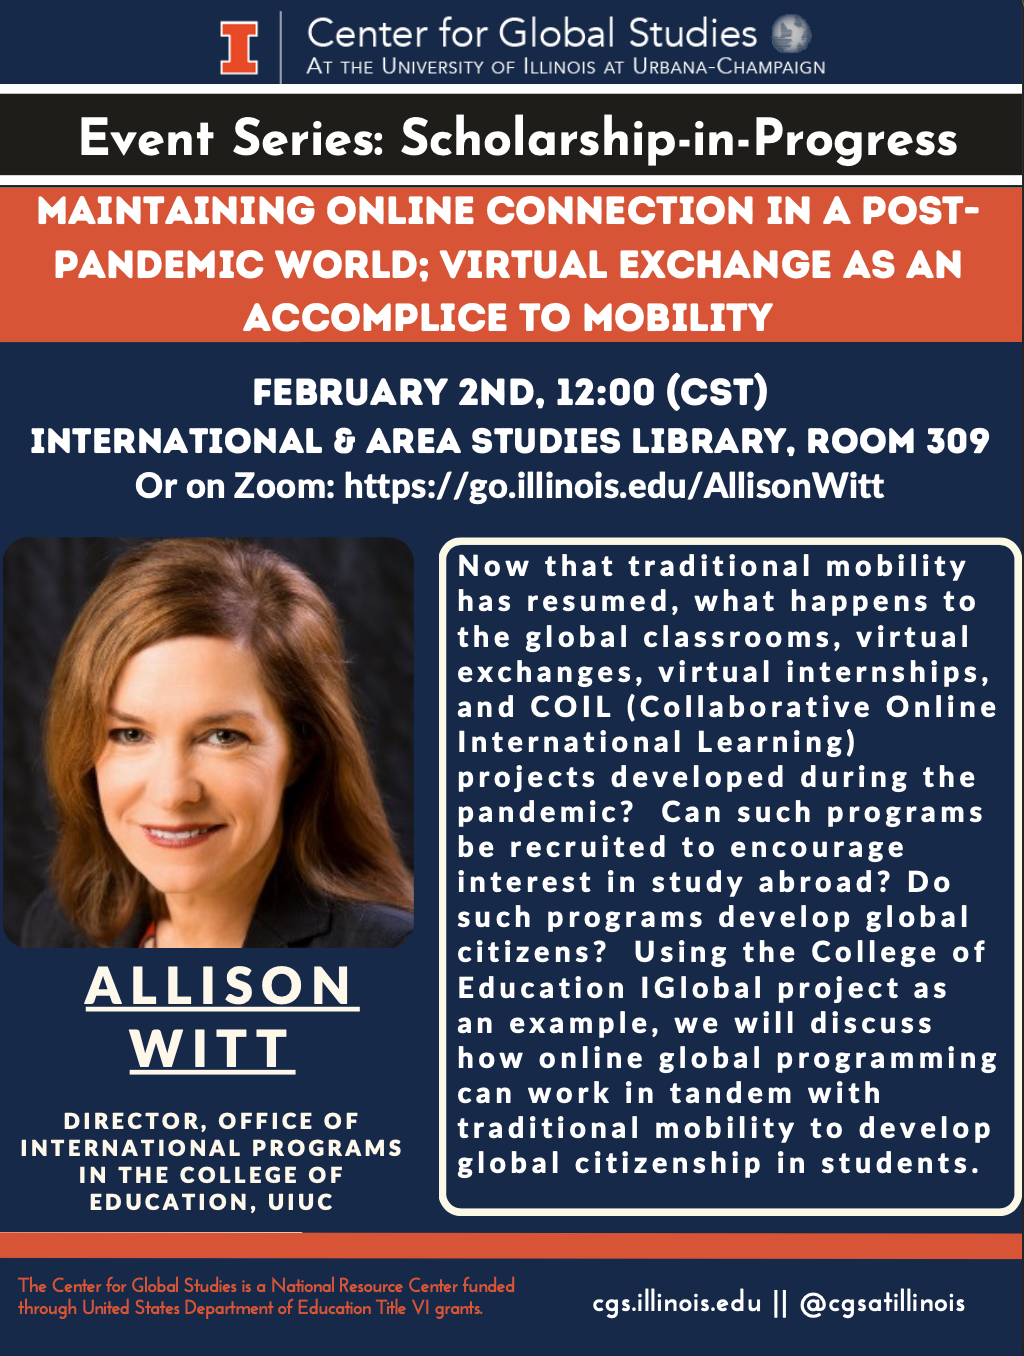 Dr. Allison WItt Talk